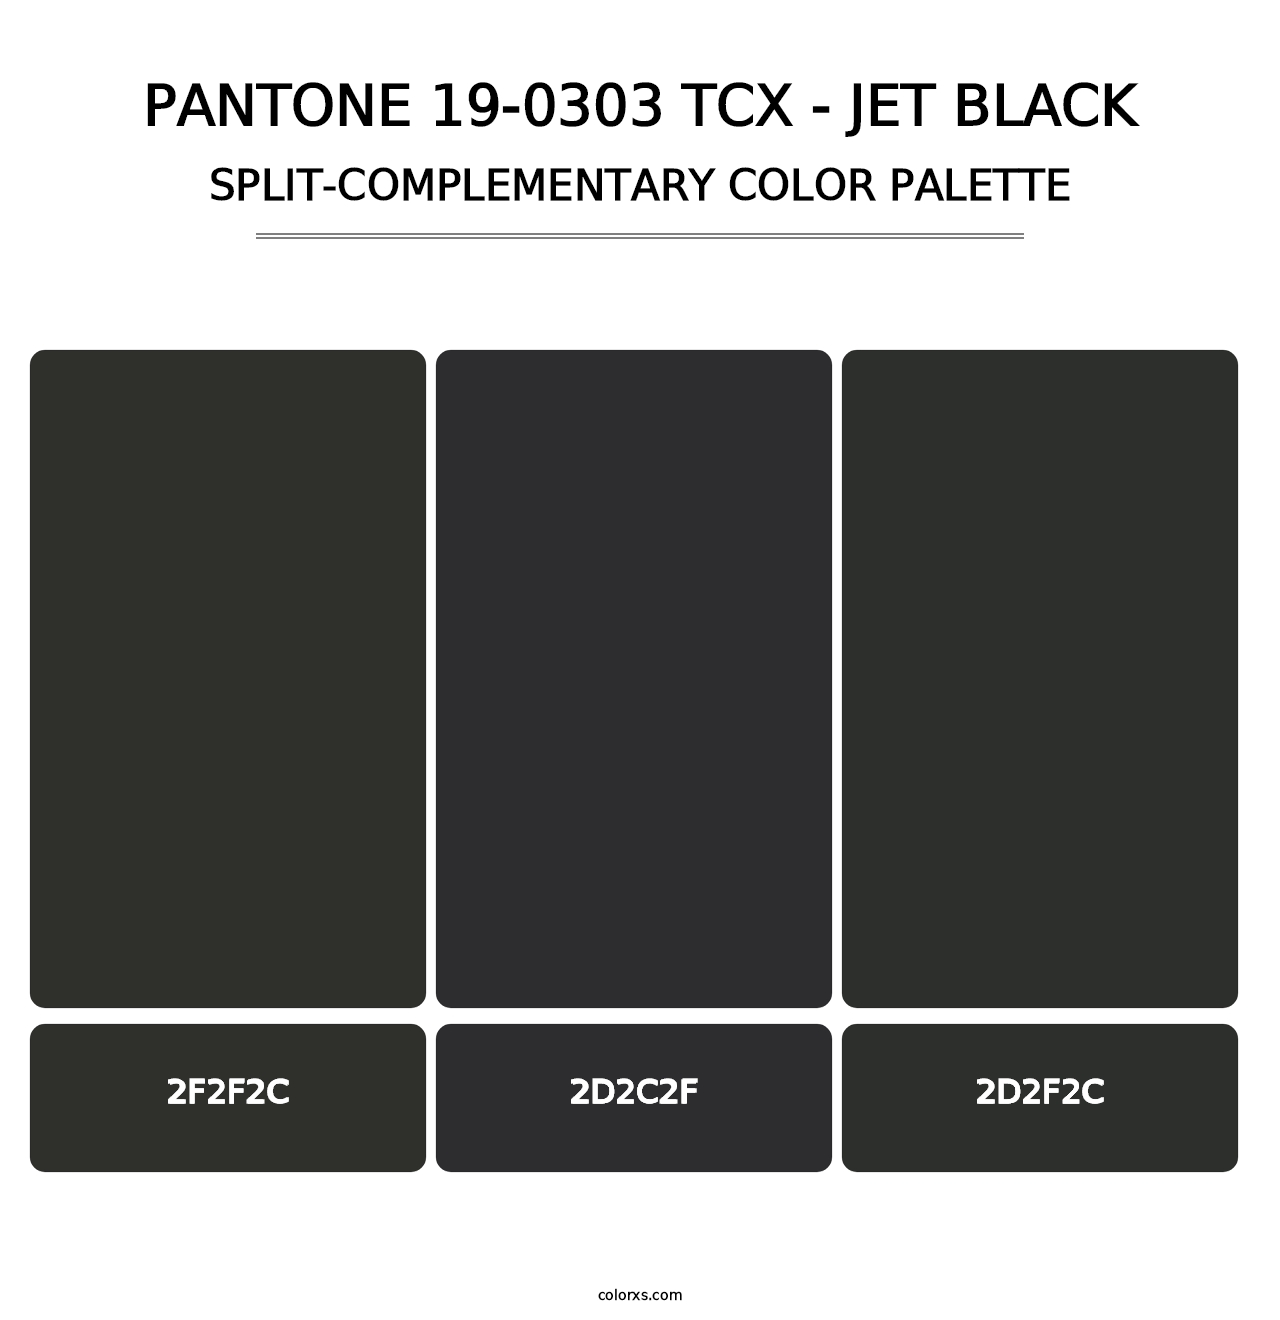 PANTONE 19-0303 TCX - Jet Black - Split-Complementary Color Palette